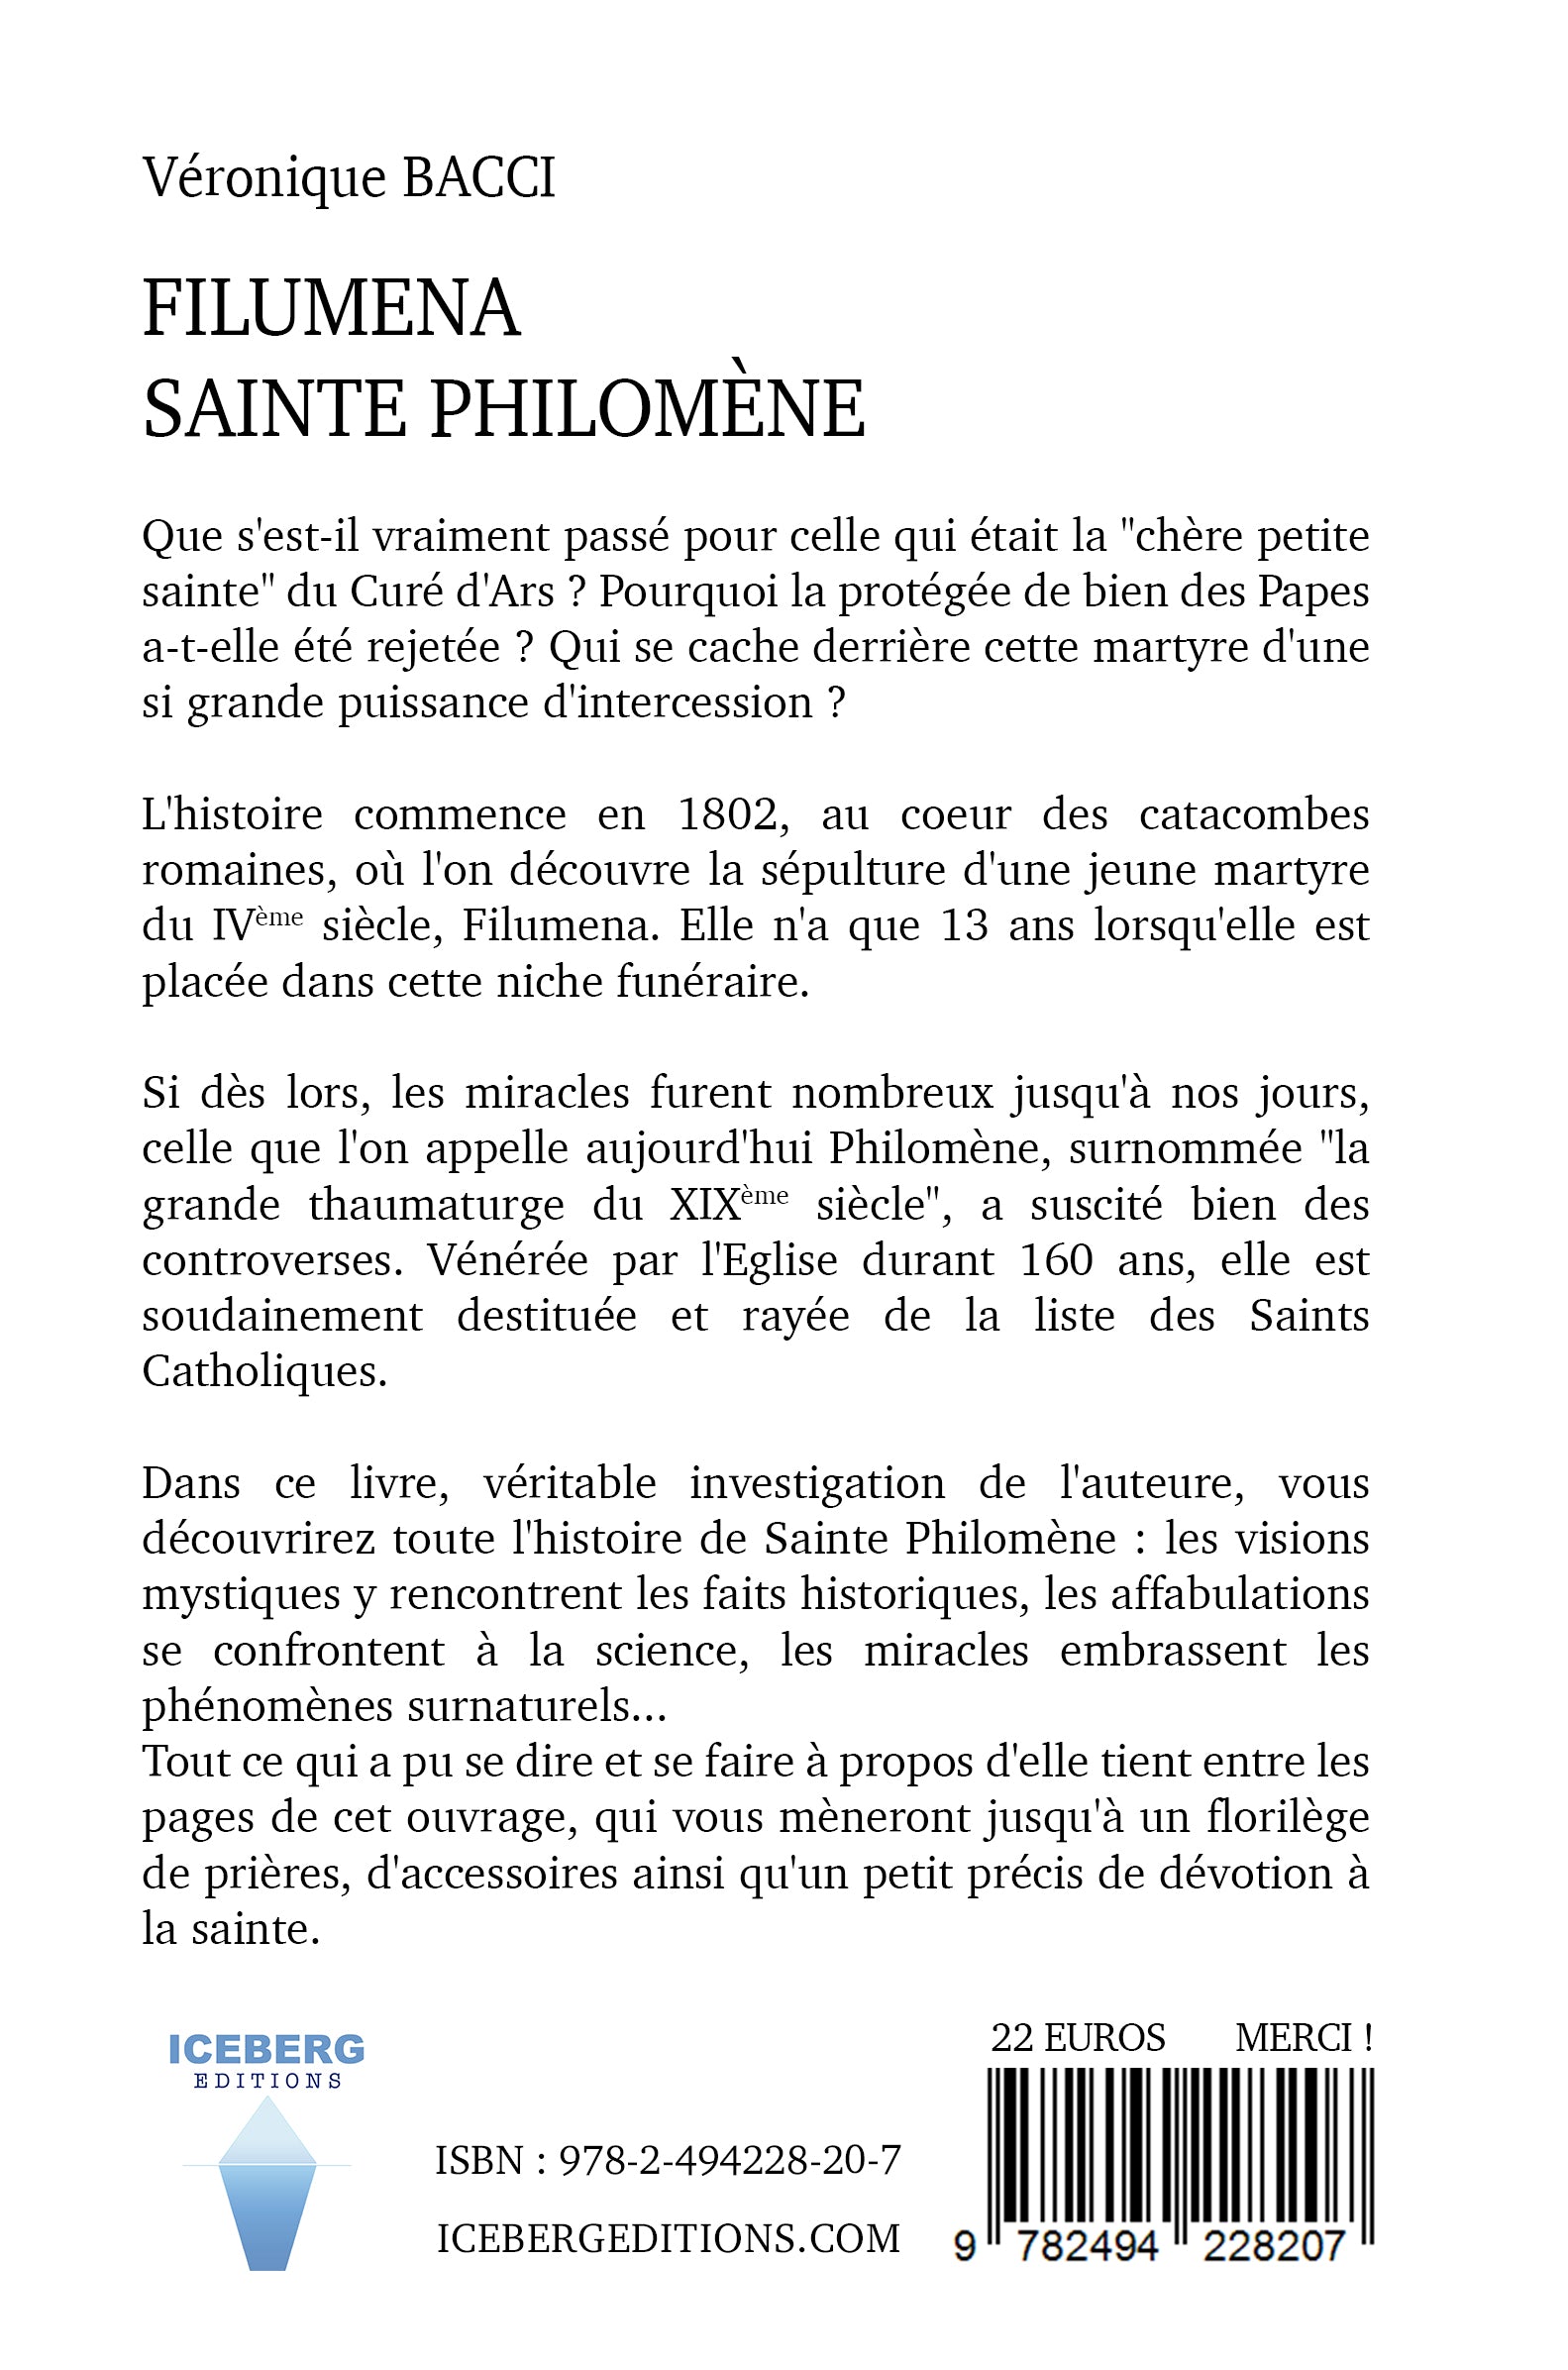 Quatrième de couverture du livre "Filumena, Sainte Philomène" de Véronique Bacci